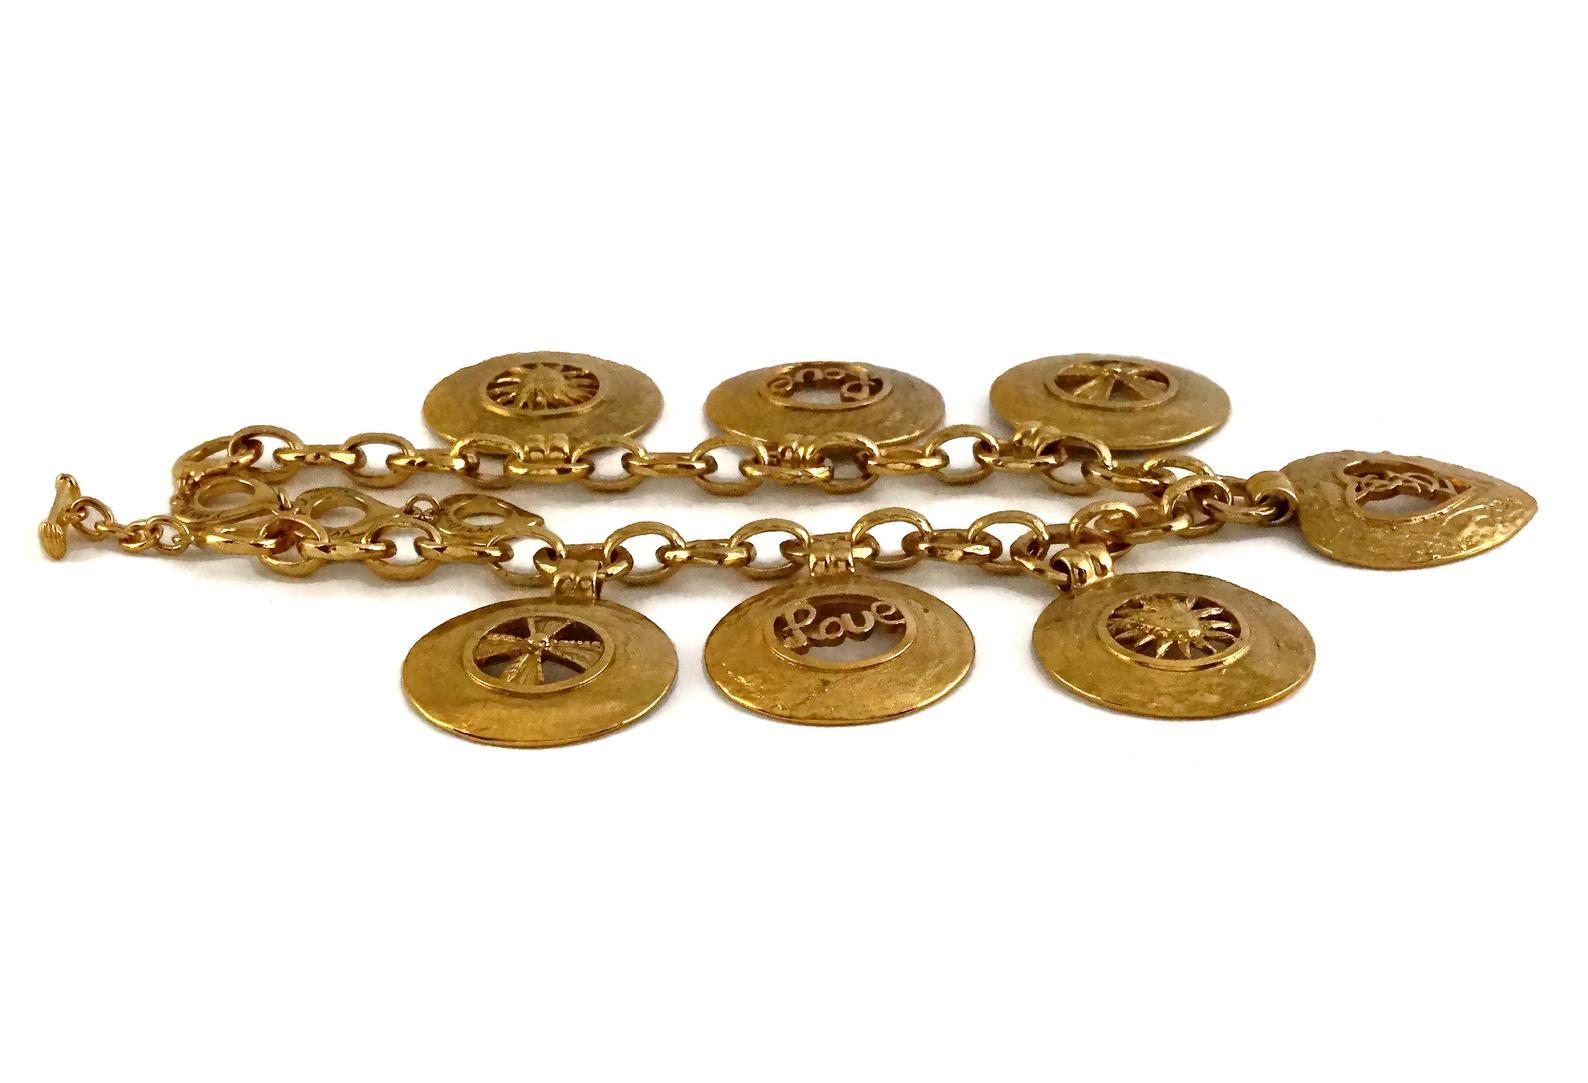 Vintage YVES SAINT LAURENT Ysl Iconic Emblem Disc Medallion Charm Necklace 1